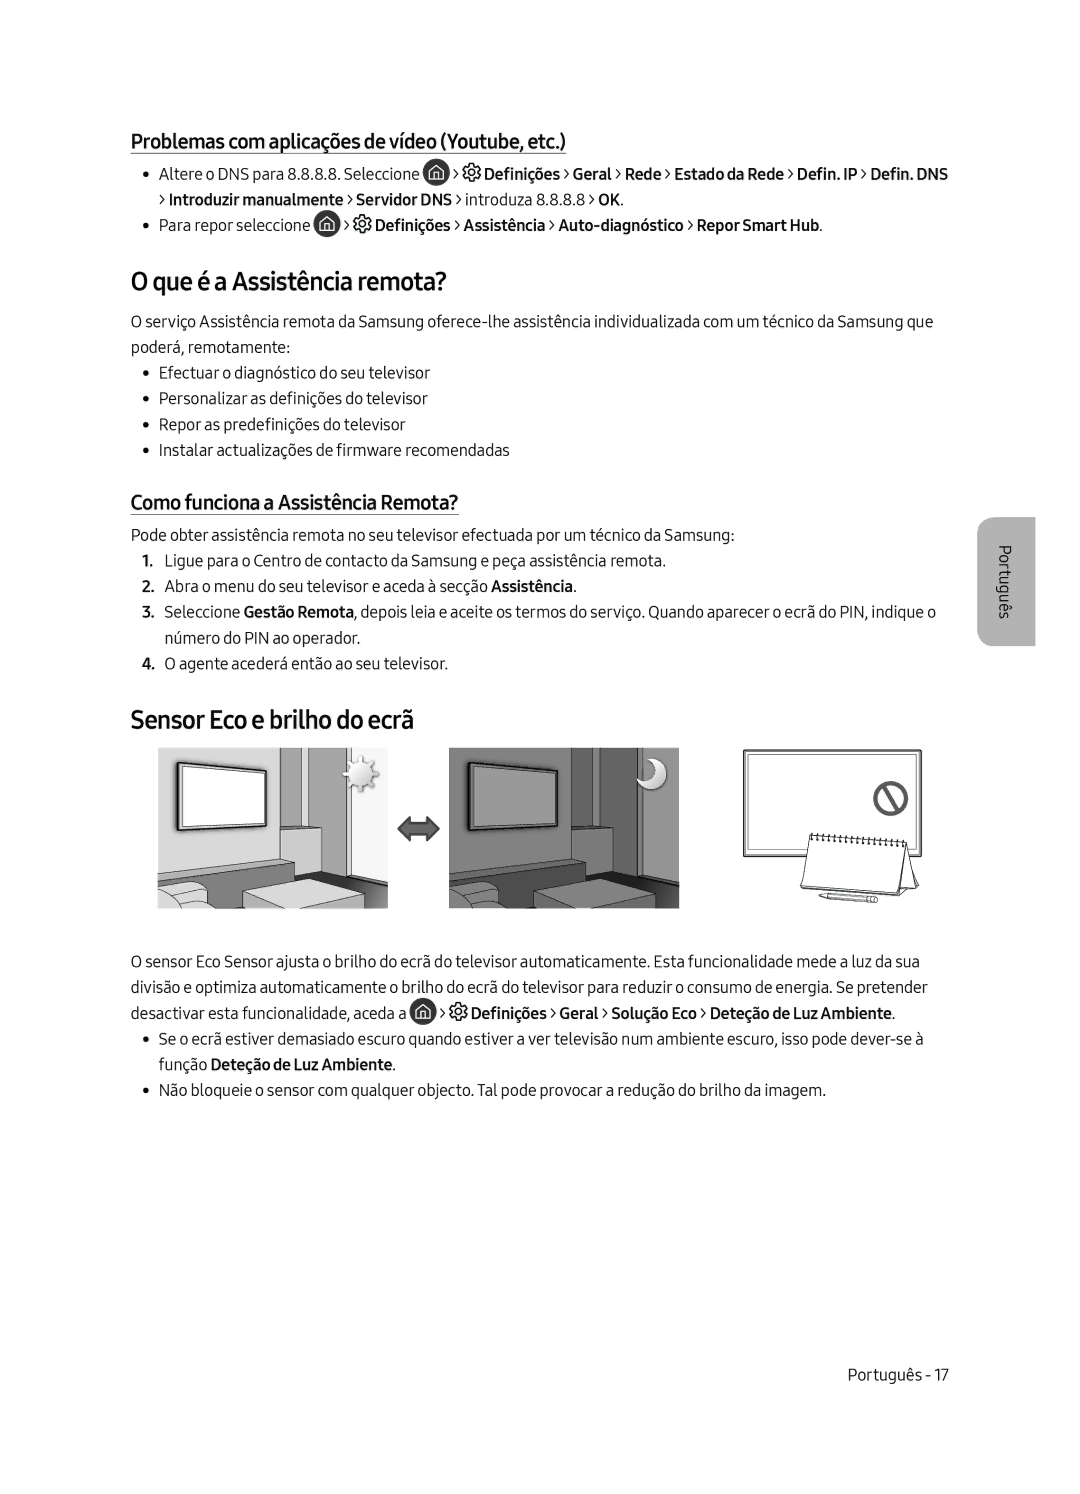 Samsung UE55MU8005TXXC manual Que é a Assistência remota?, Sensor Eco e brilho do ecrã, Como funciona a Assistência Remota? 